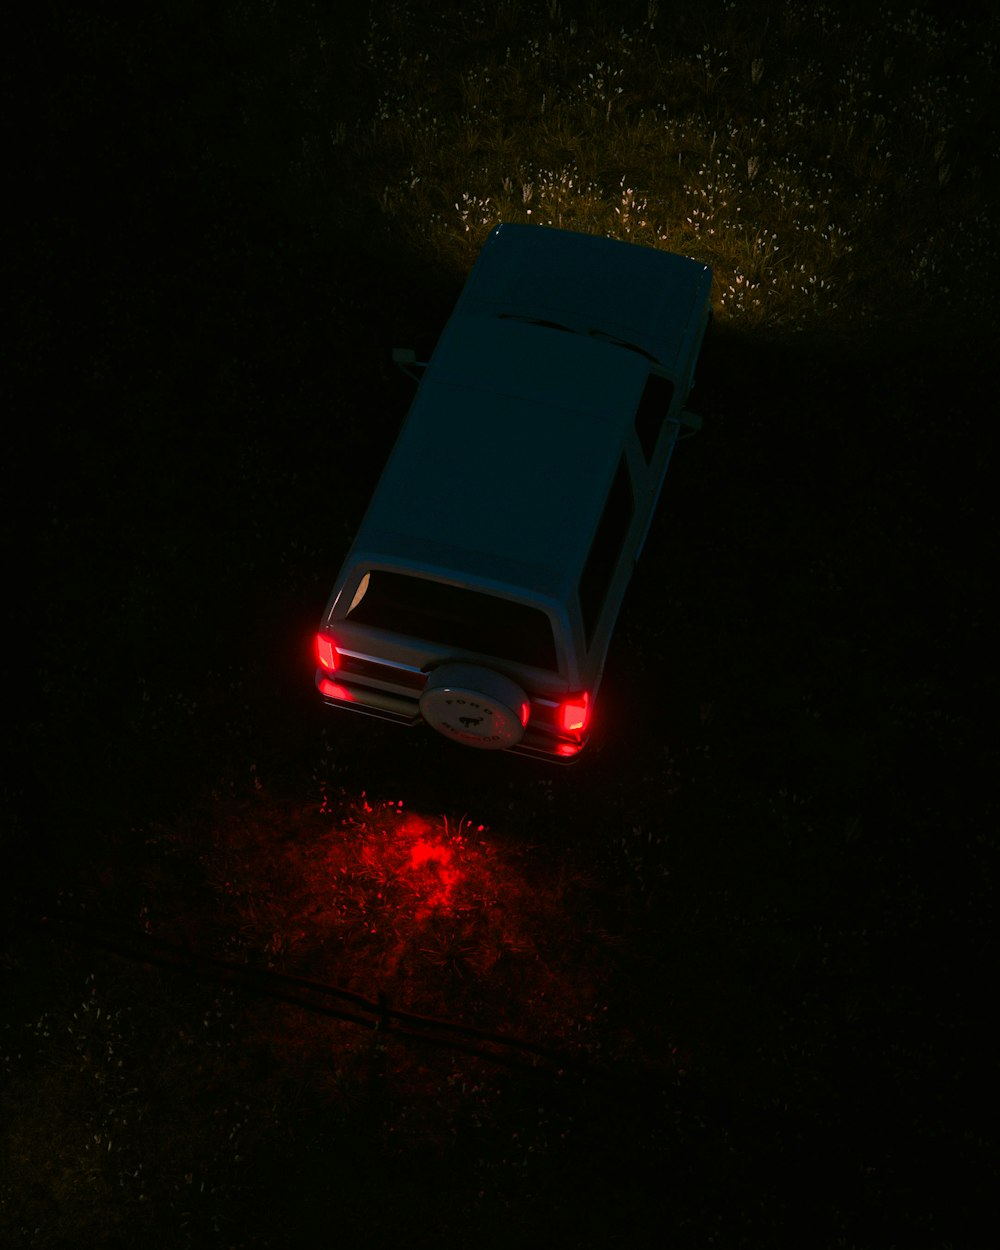 어둠 속에서 불이 켜진 자동차